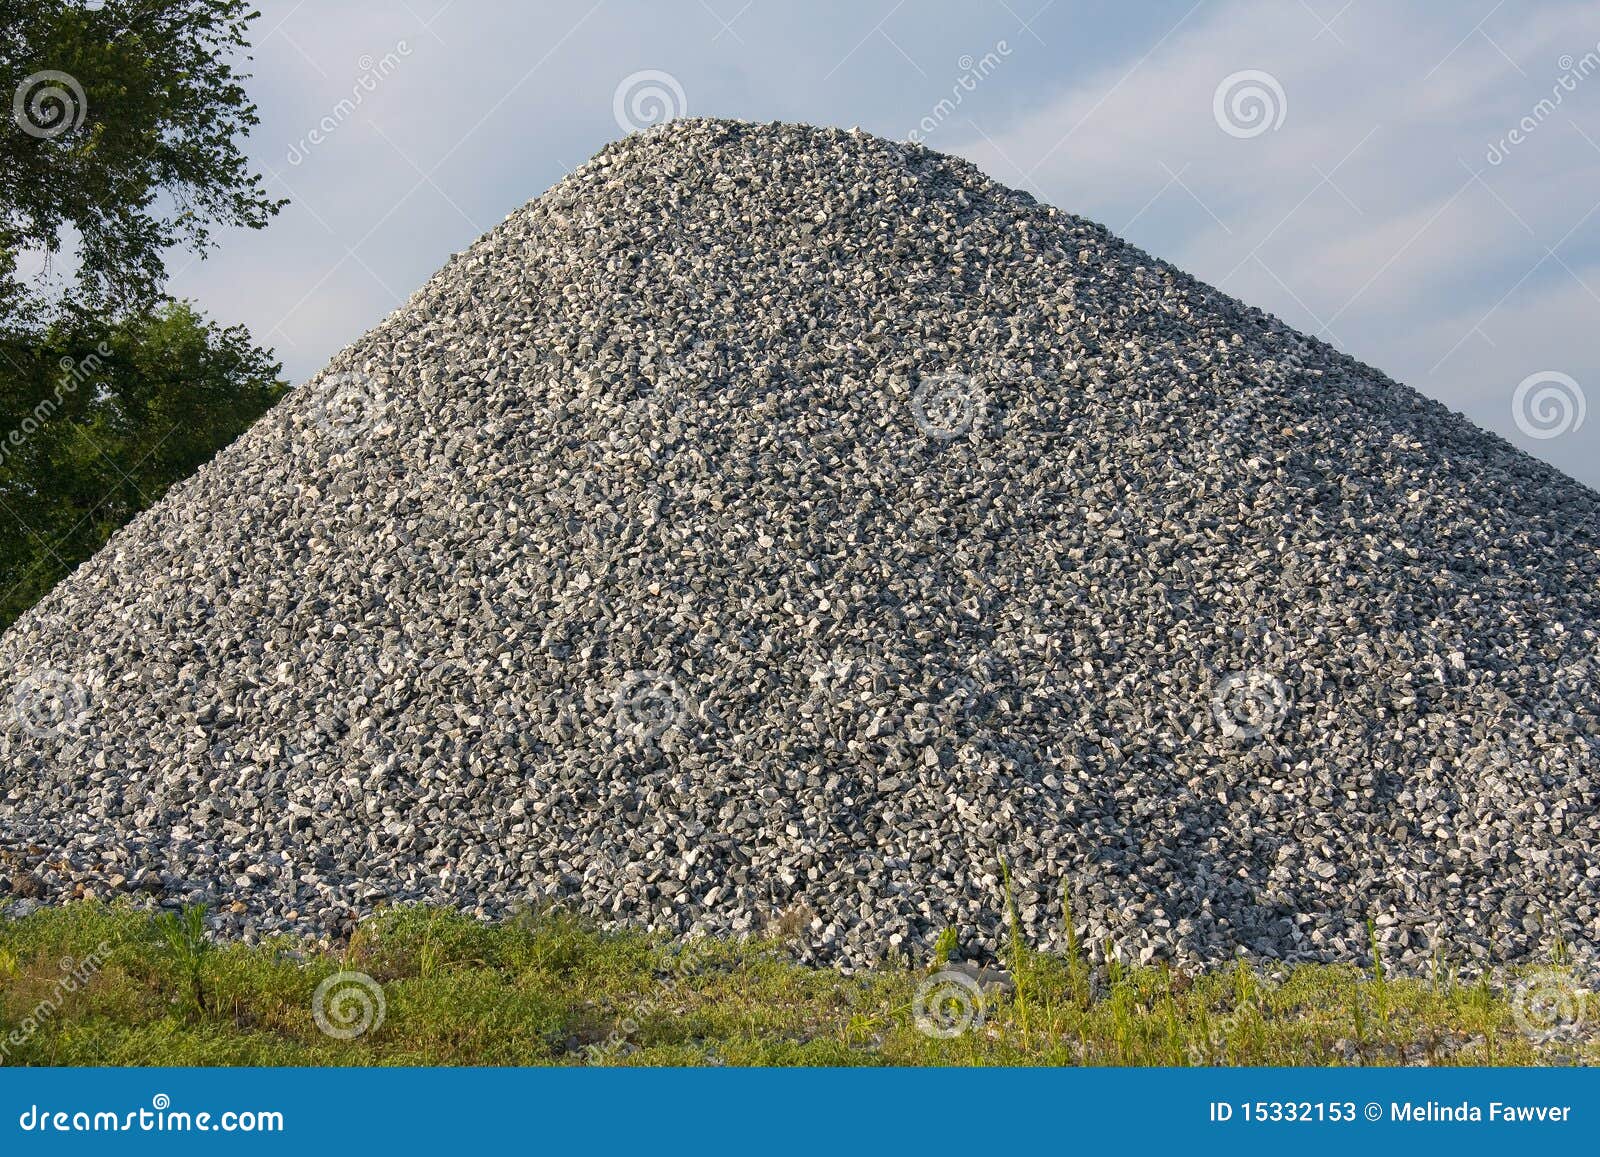 pile of gravel